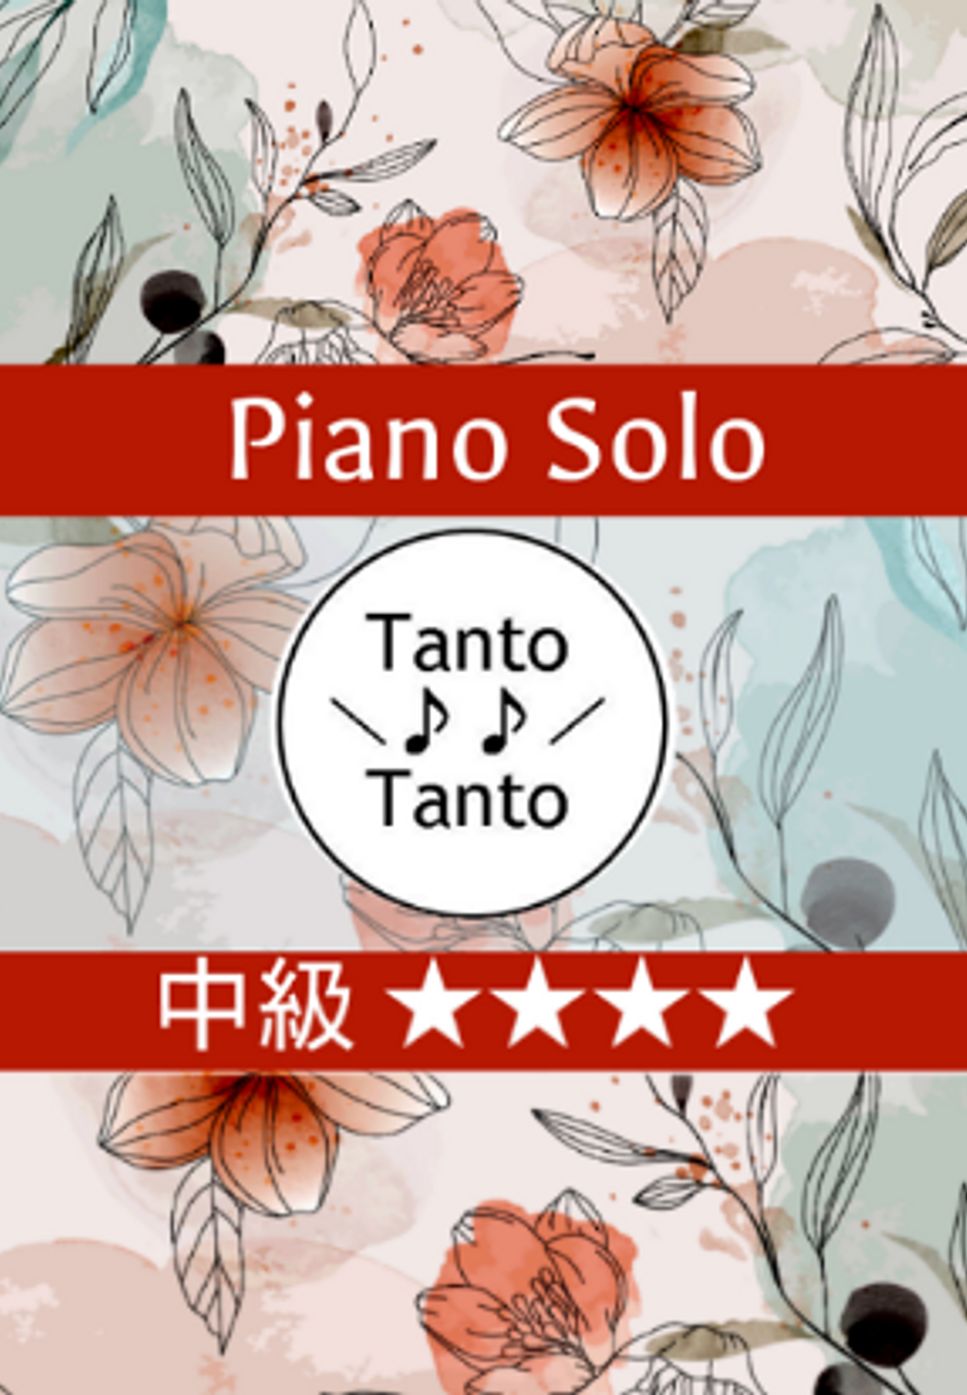 星野源 - ドラえもん (のび太の宝島 Piano Solo in F) by Tanto Tanto